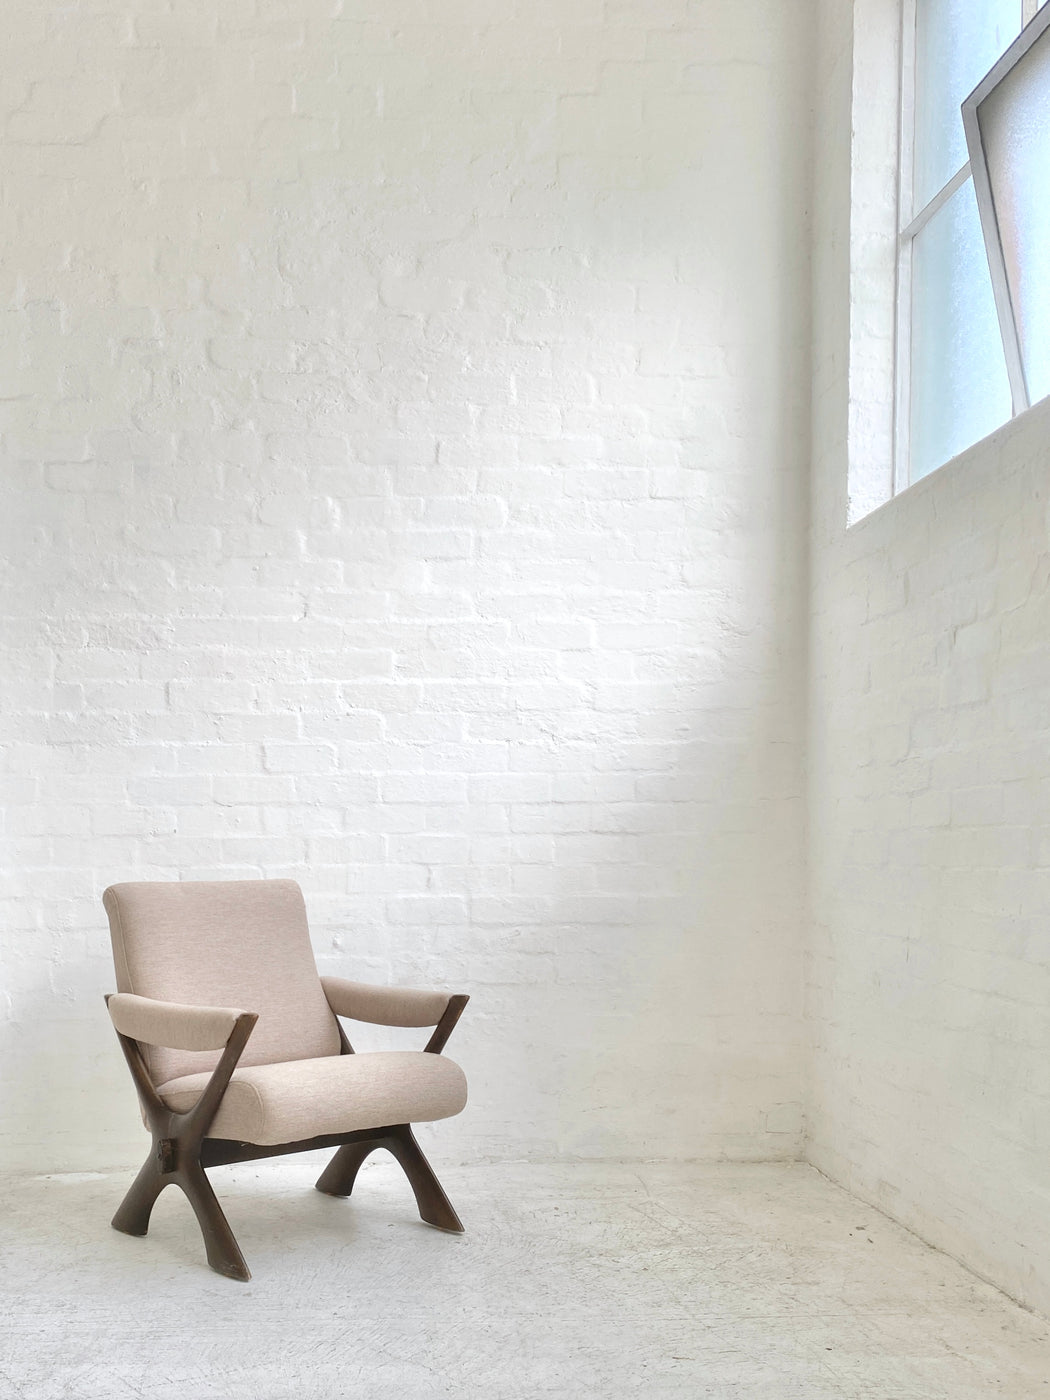 Frederik Schriever-Abeln 'Condor' Lounge Chair